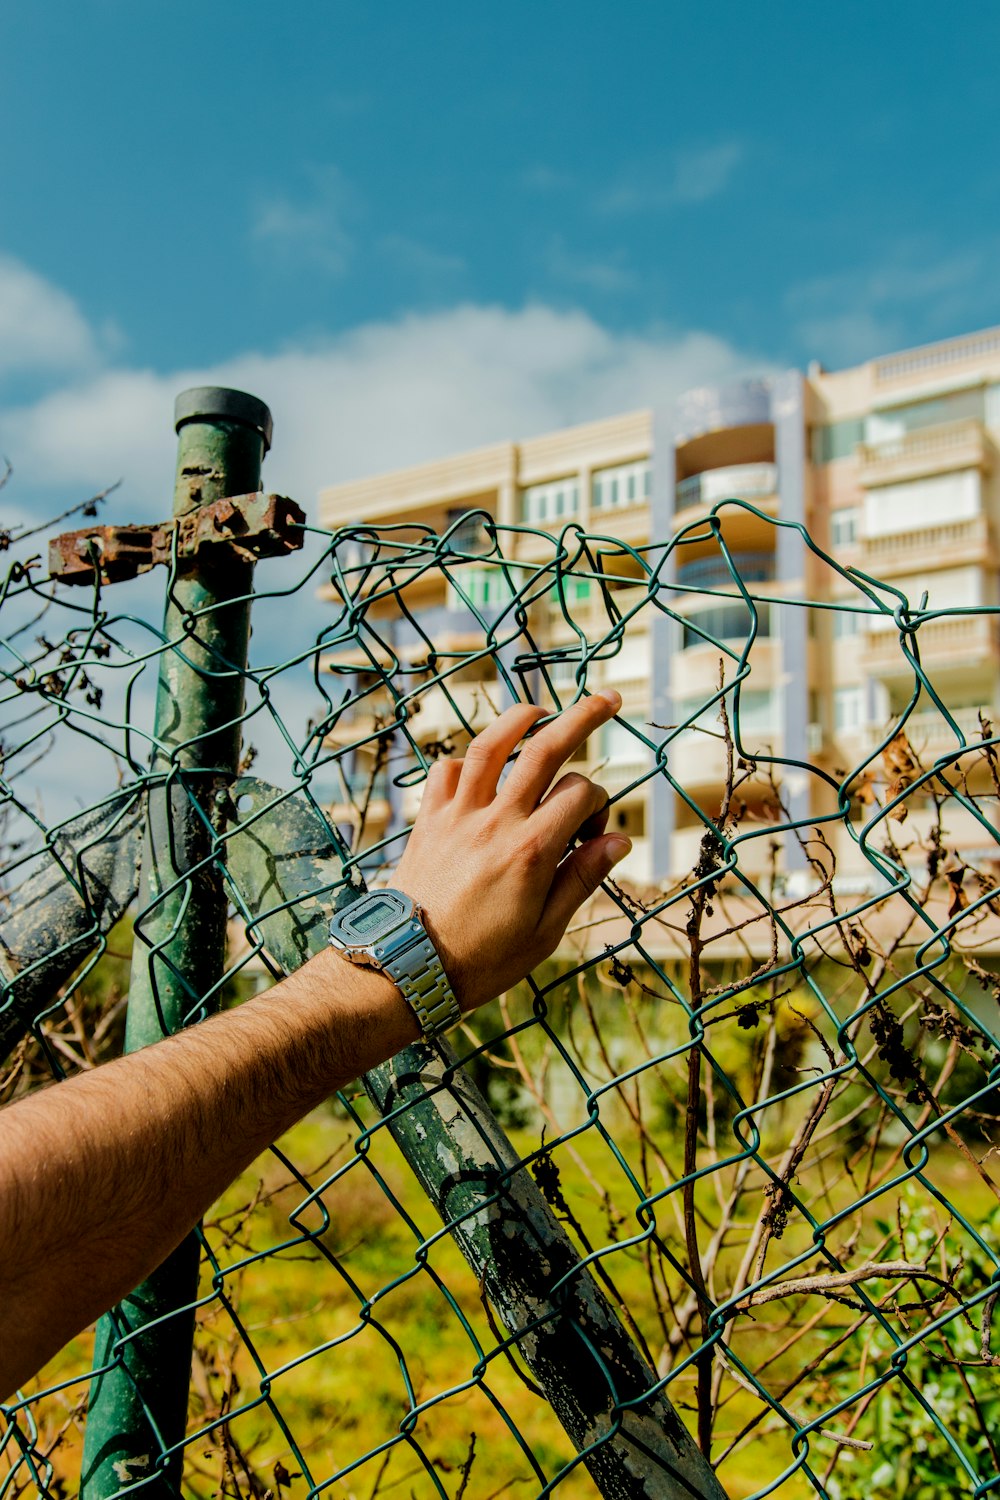 a hand reaching through a chain link fence